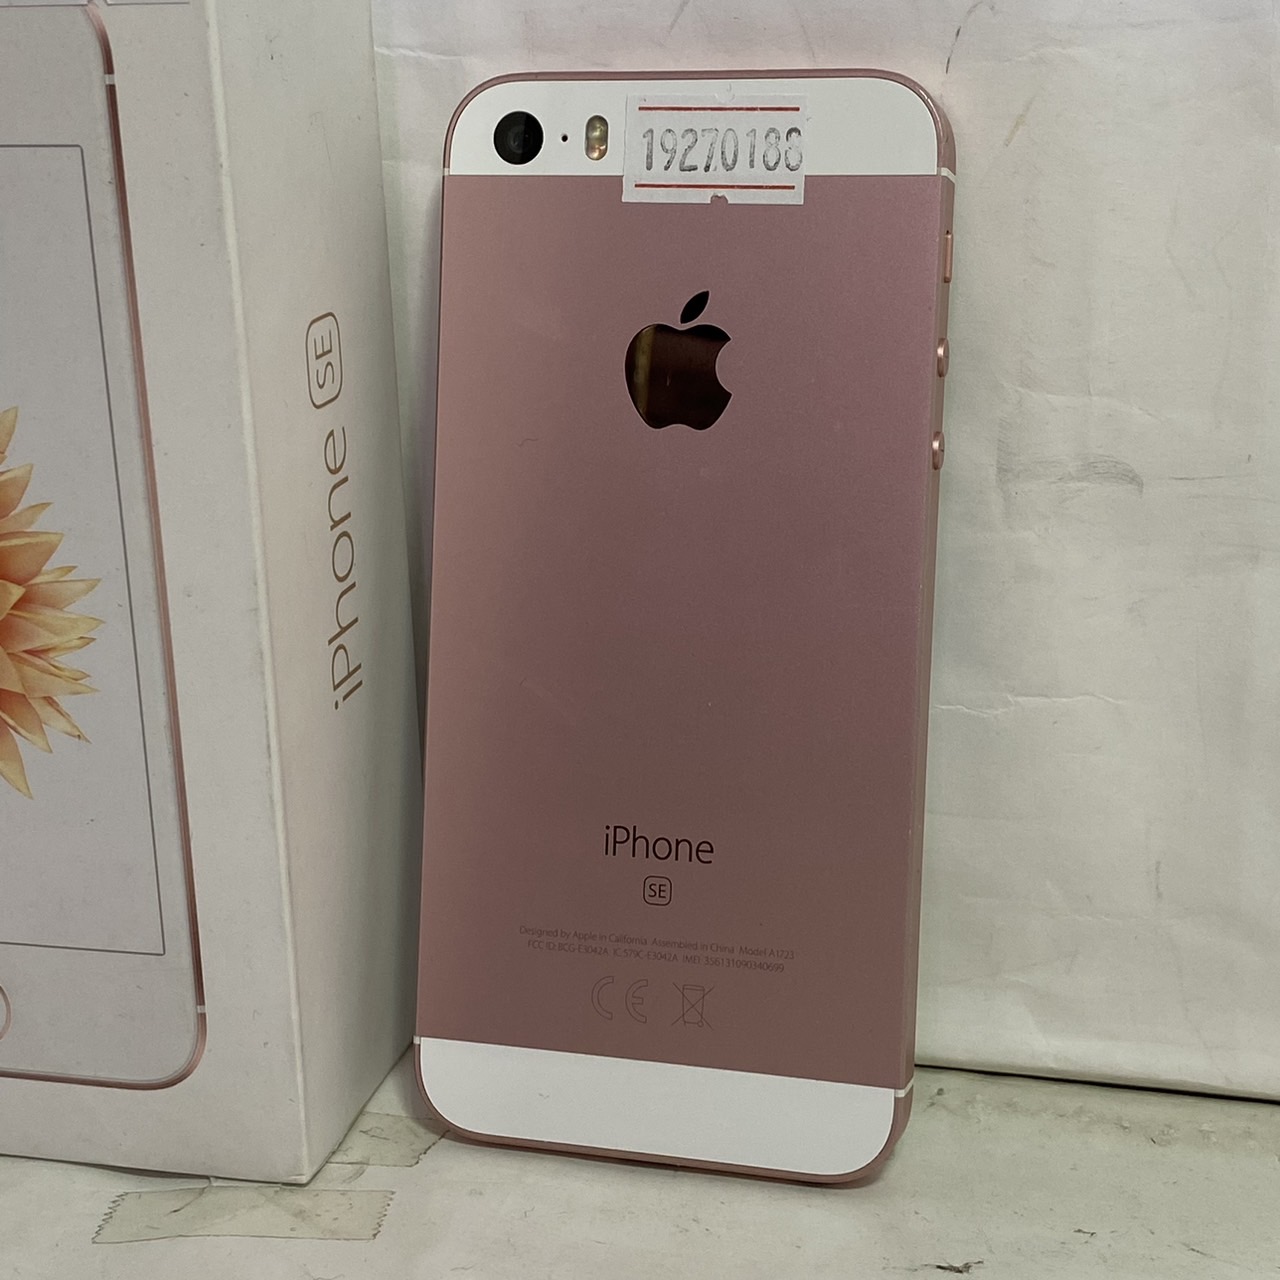 APPLE(アップル) iPhone SE 32GB [ピンク] A1723の激安通販